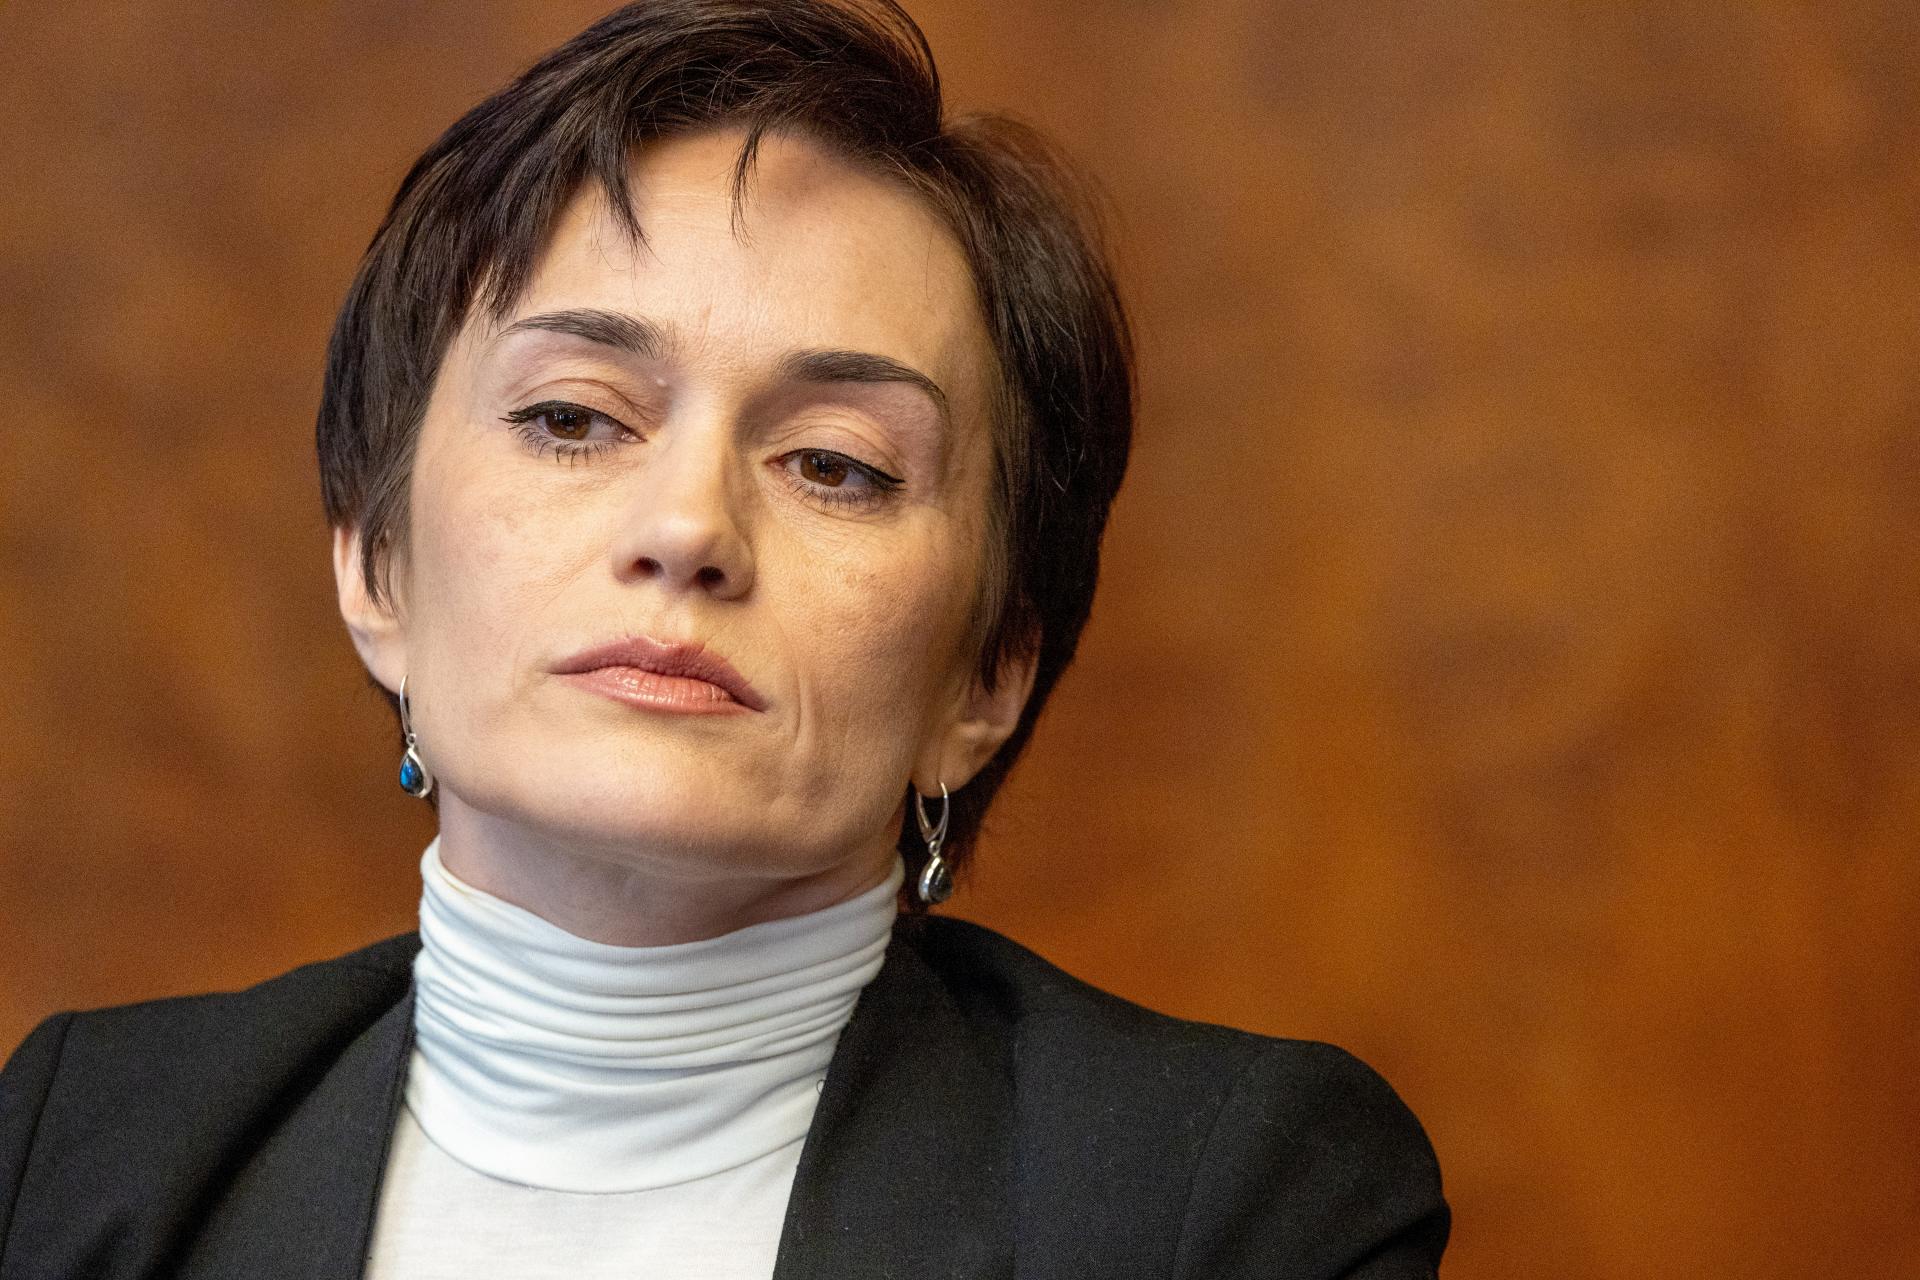 Manželka väzneného kritika Kremľa Kara-Murzu vyzýva na výmenu väzňov. O žiadnych rokovaniach však nevie